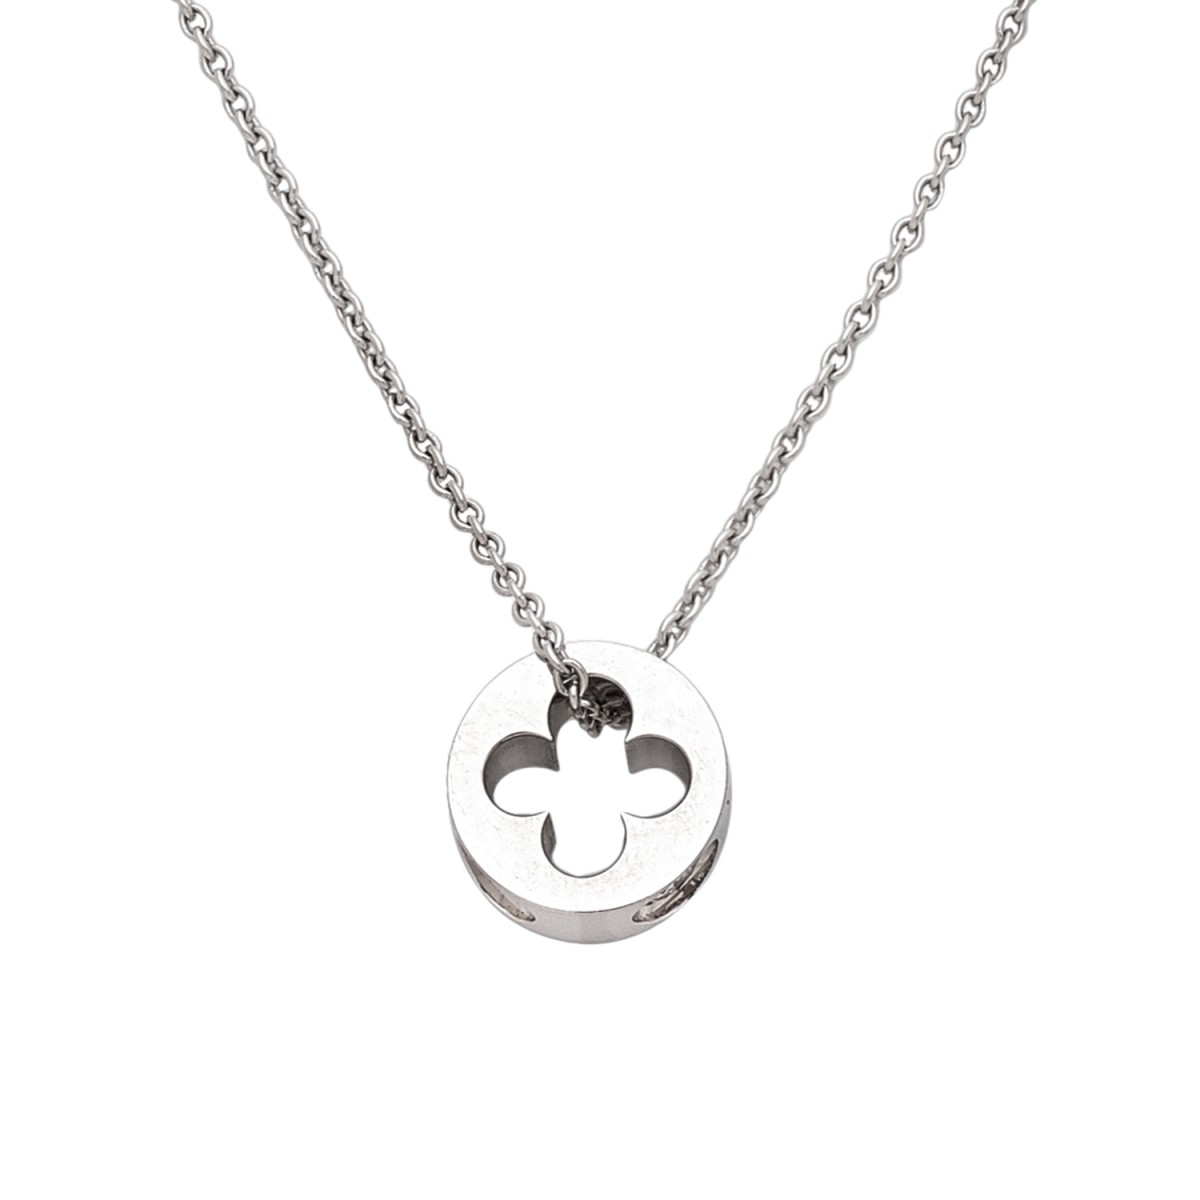 Louis Vuitton Empreinte necklace